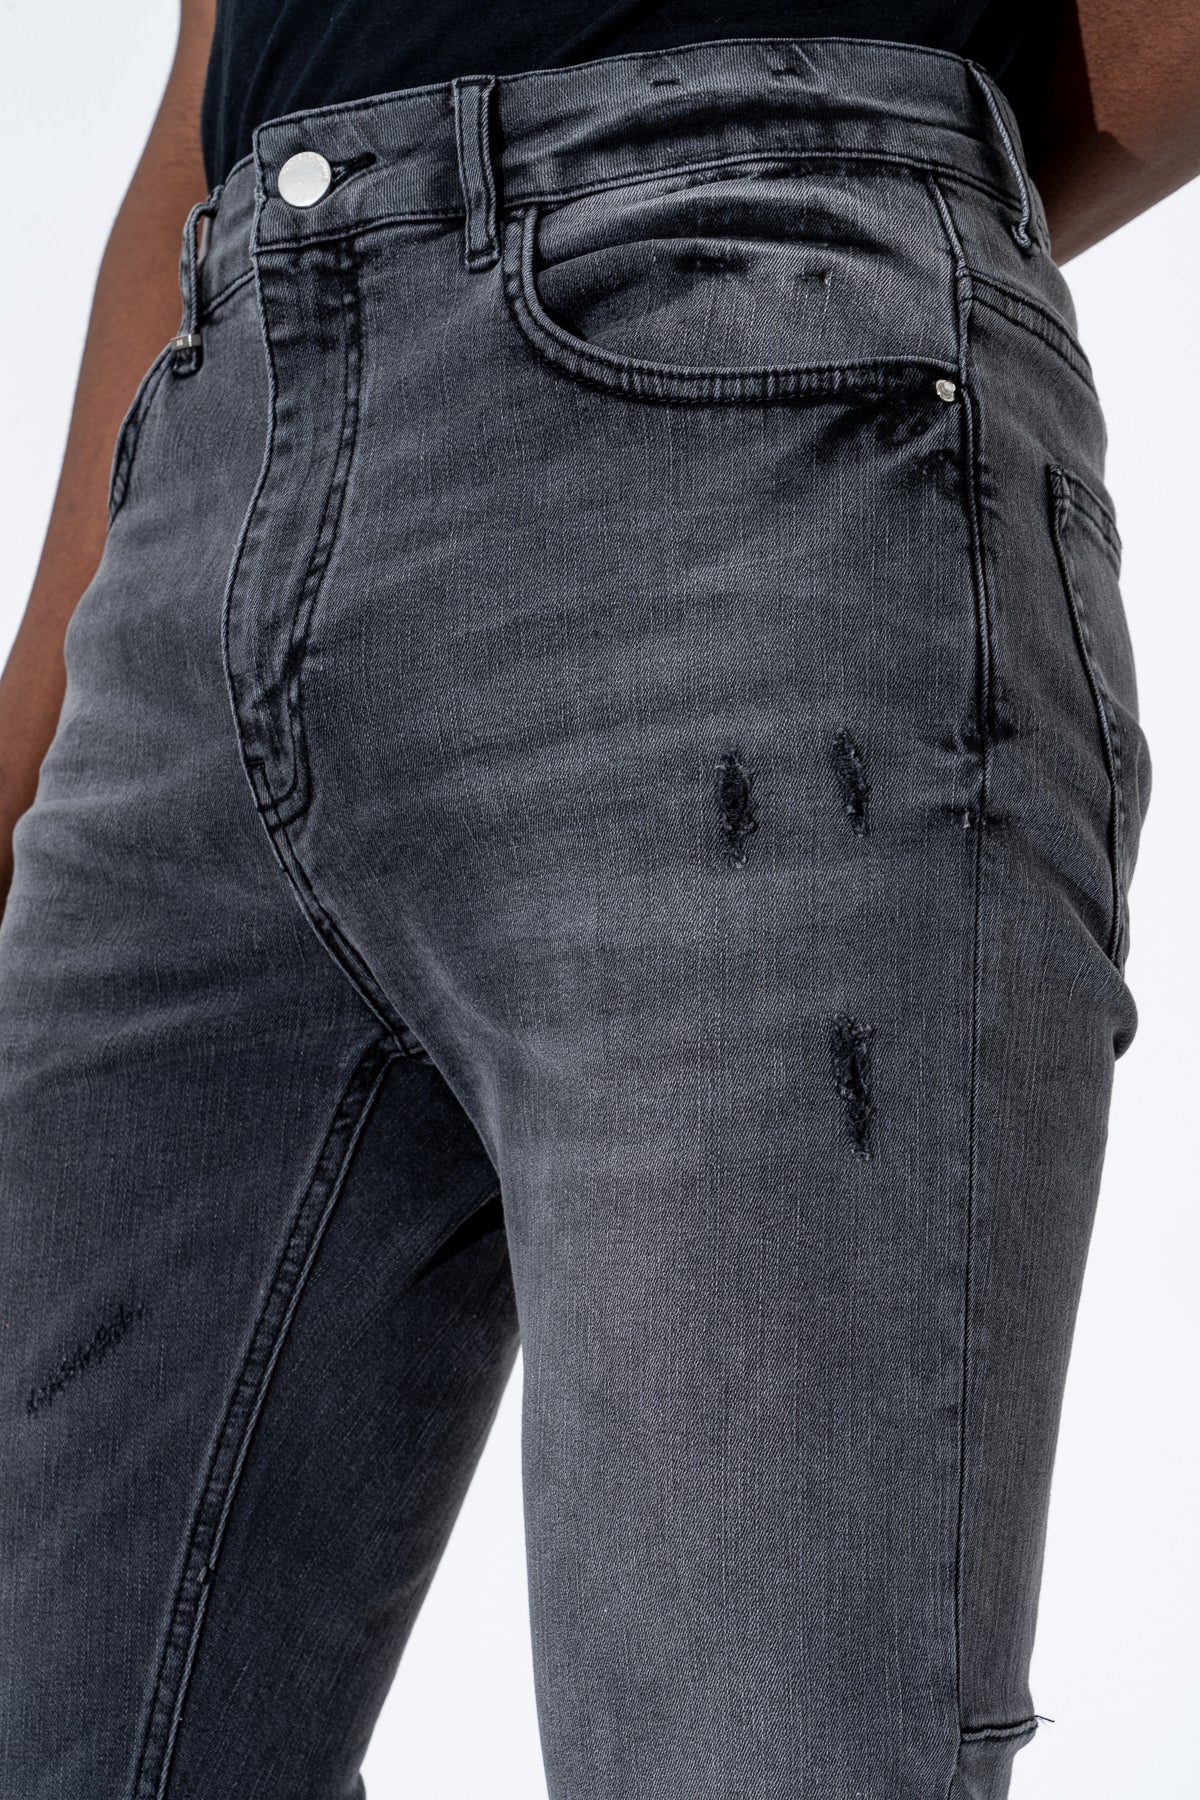 Destroyer Skinny Jeans in Grey Washed Denim